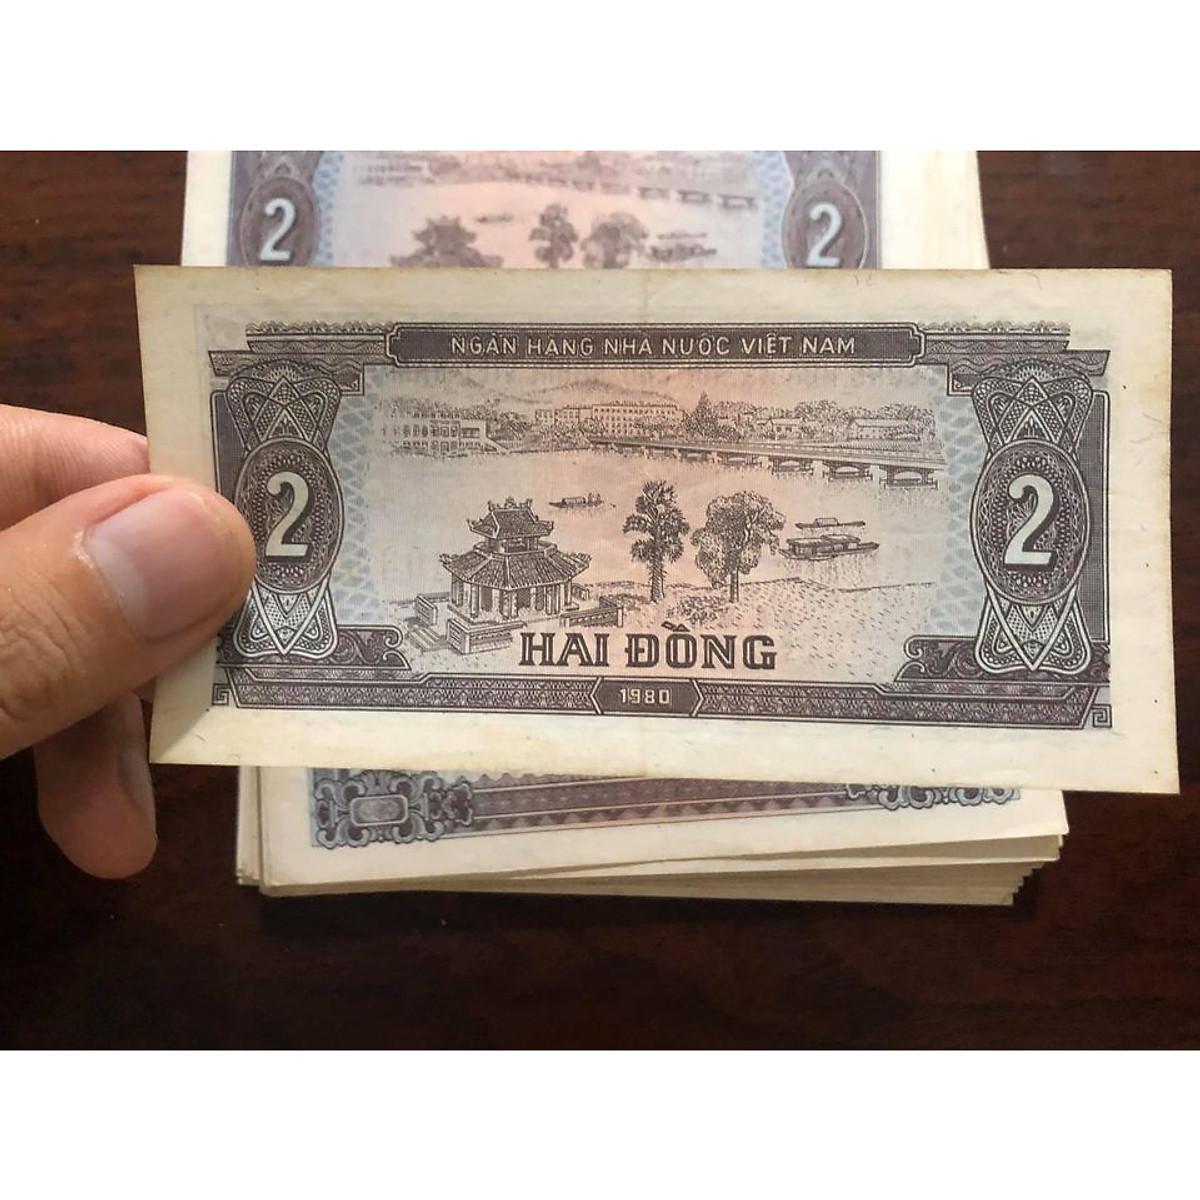 01 tờ 2 đồng bao cấp, tiền cổ xưa Việt Nam thật 100%,  - tặng kèm túi nilon PASA NUMIS để bảo quản